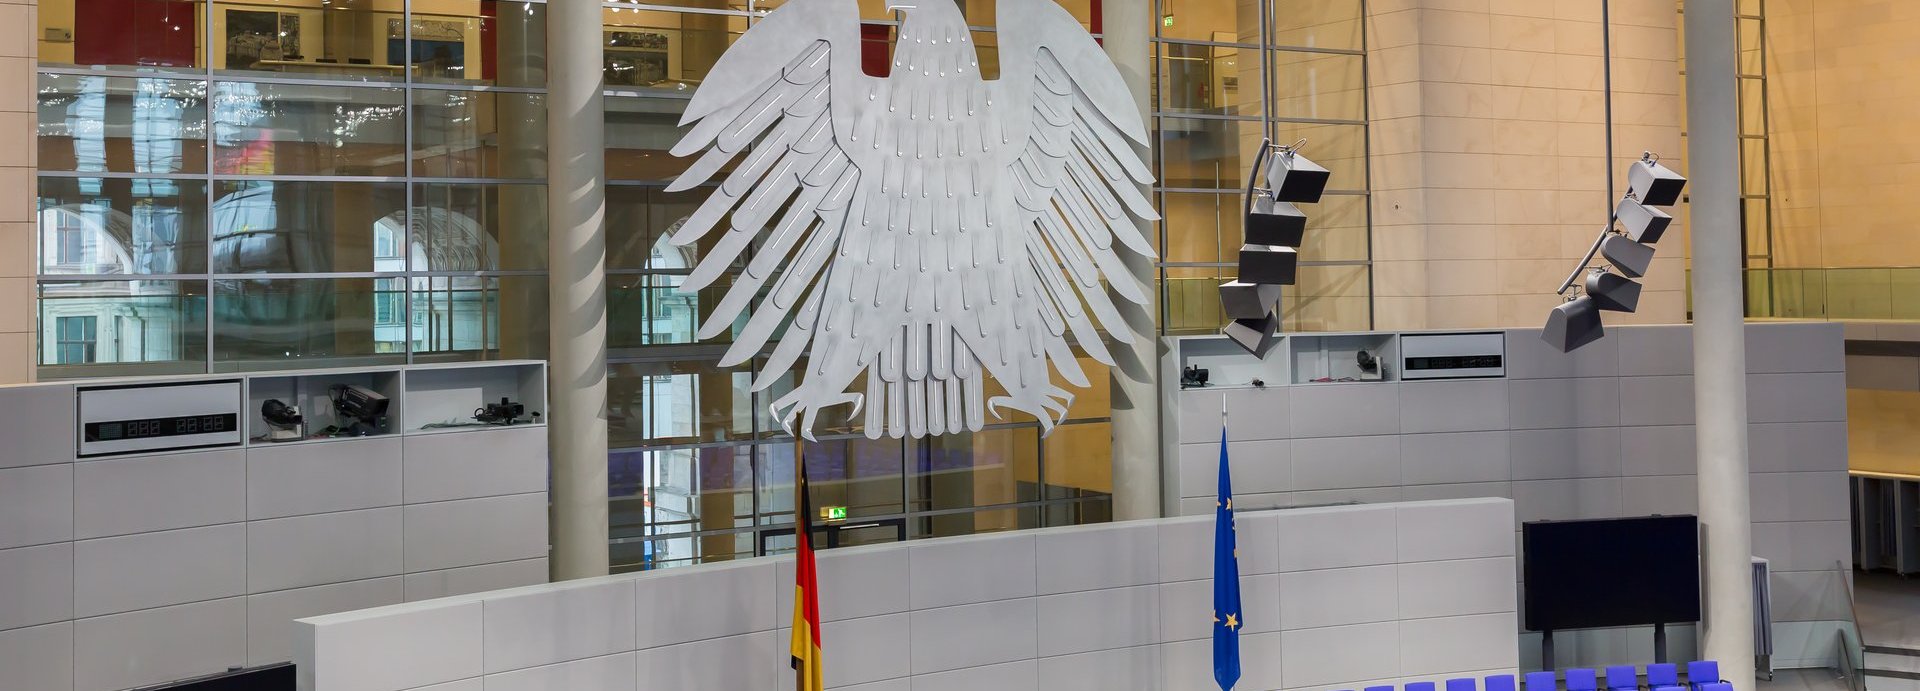 Adler im Plenarsaal des Bundestags mit leeren Sitzen